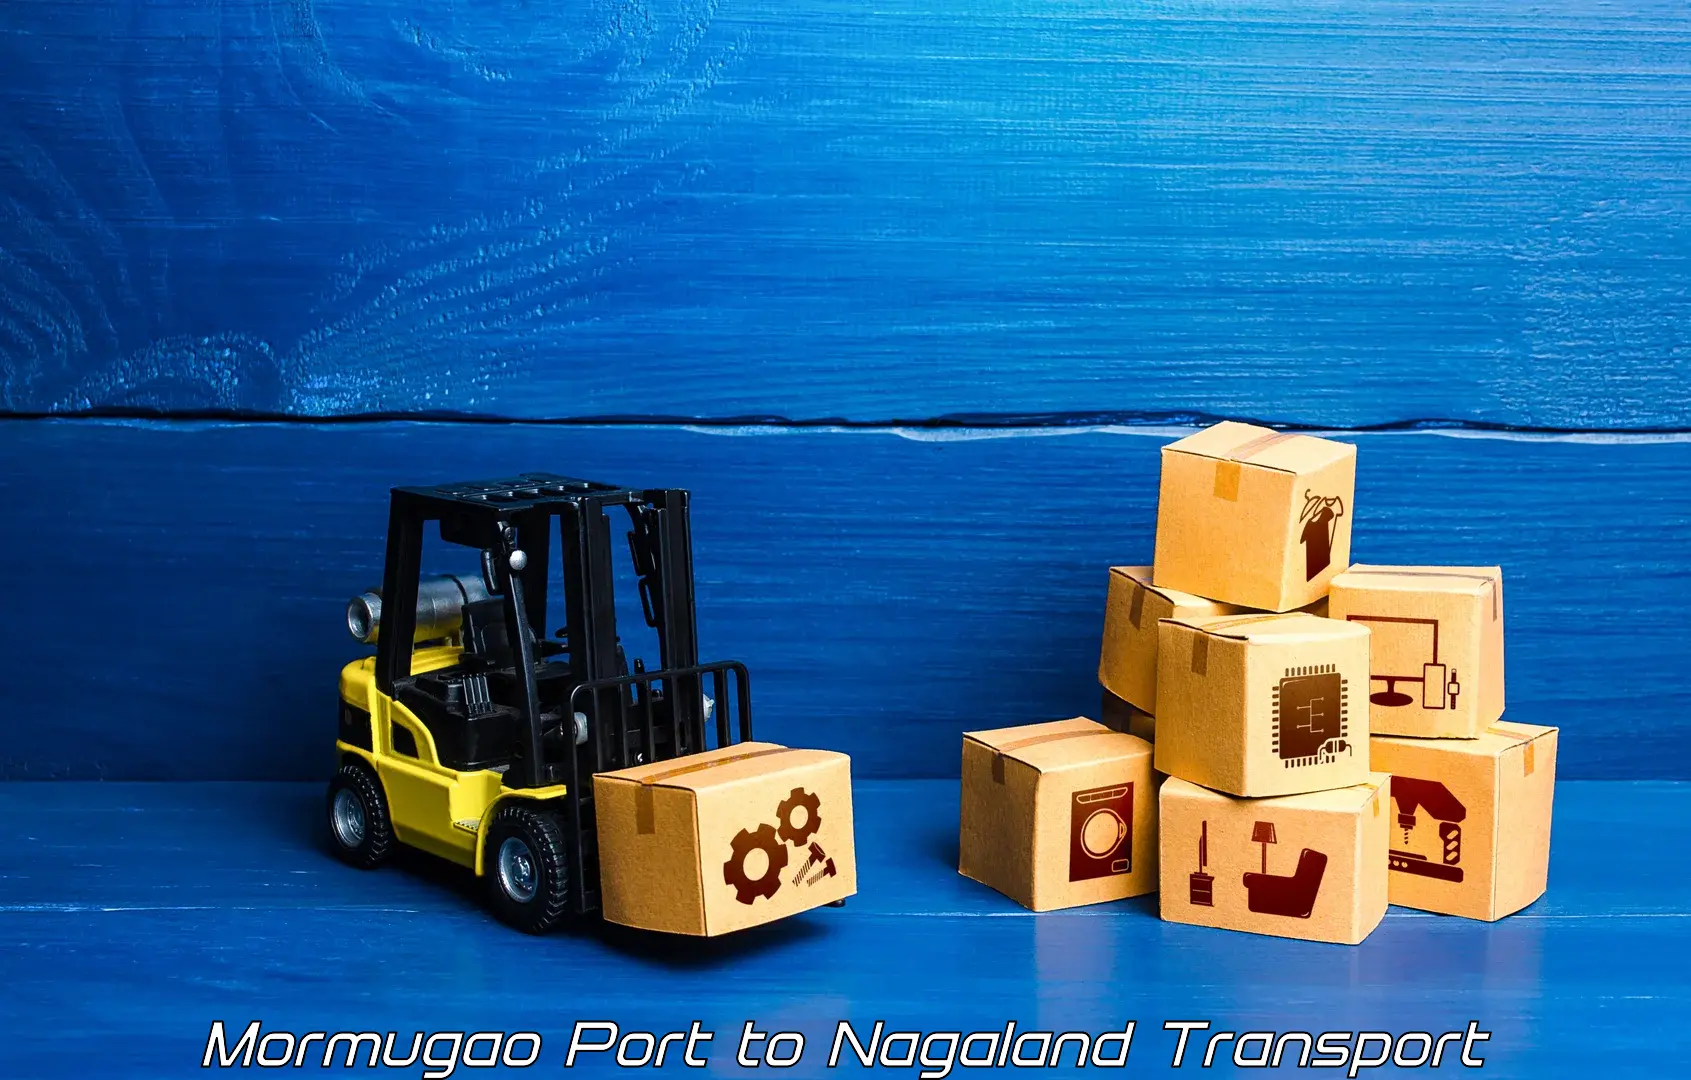 Air freight transport services Mormugao Port to Nagaland